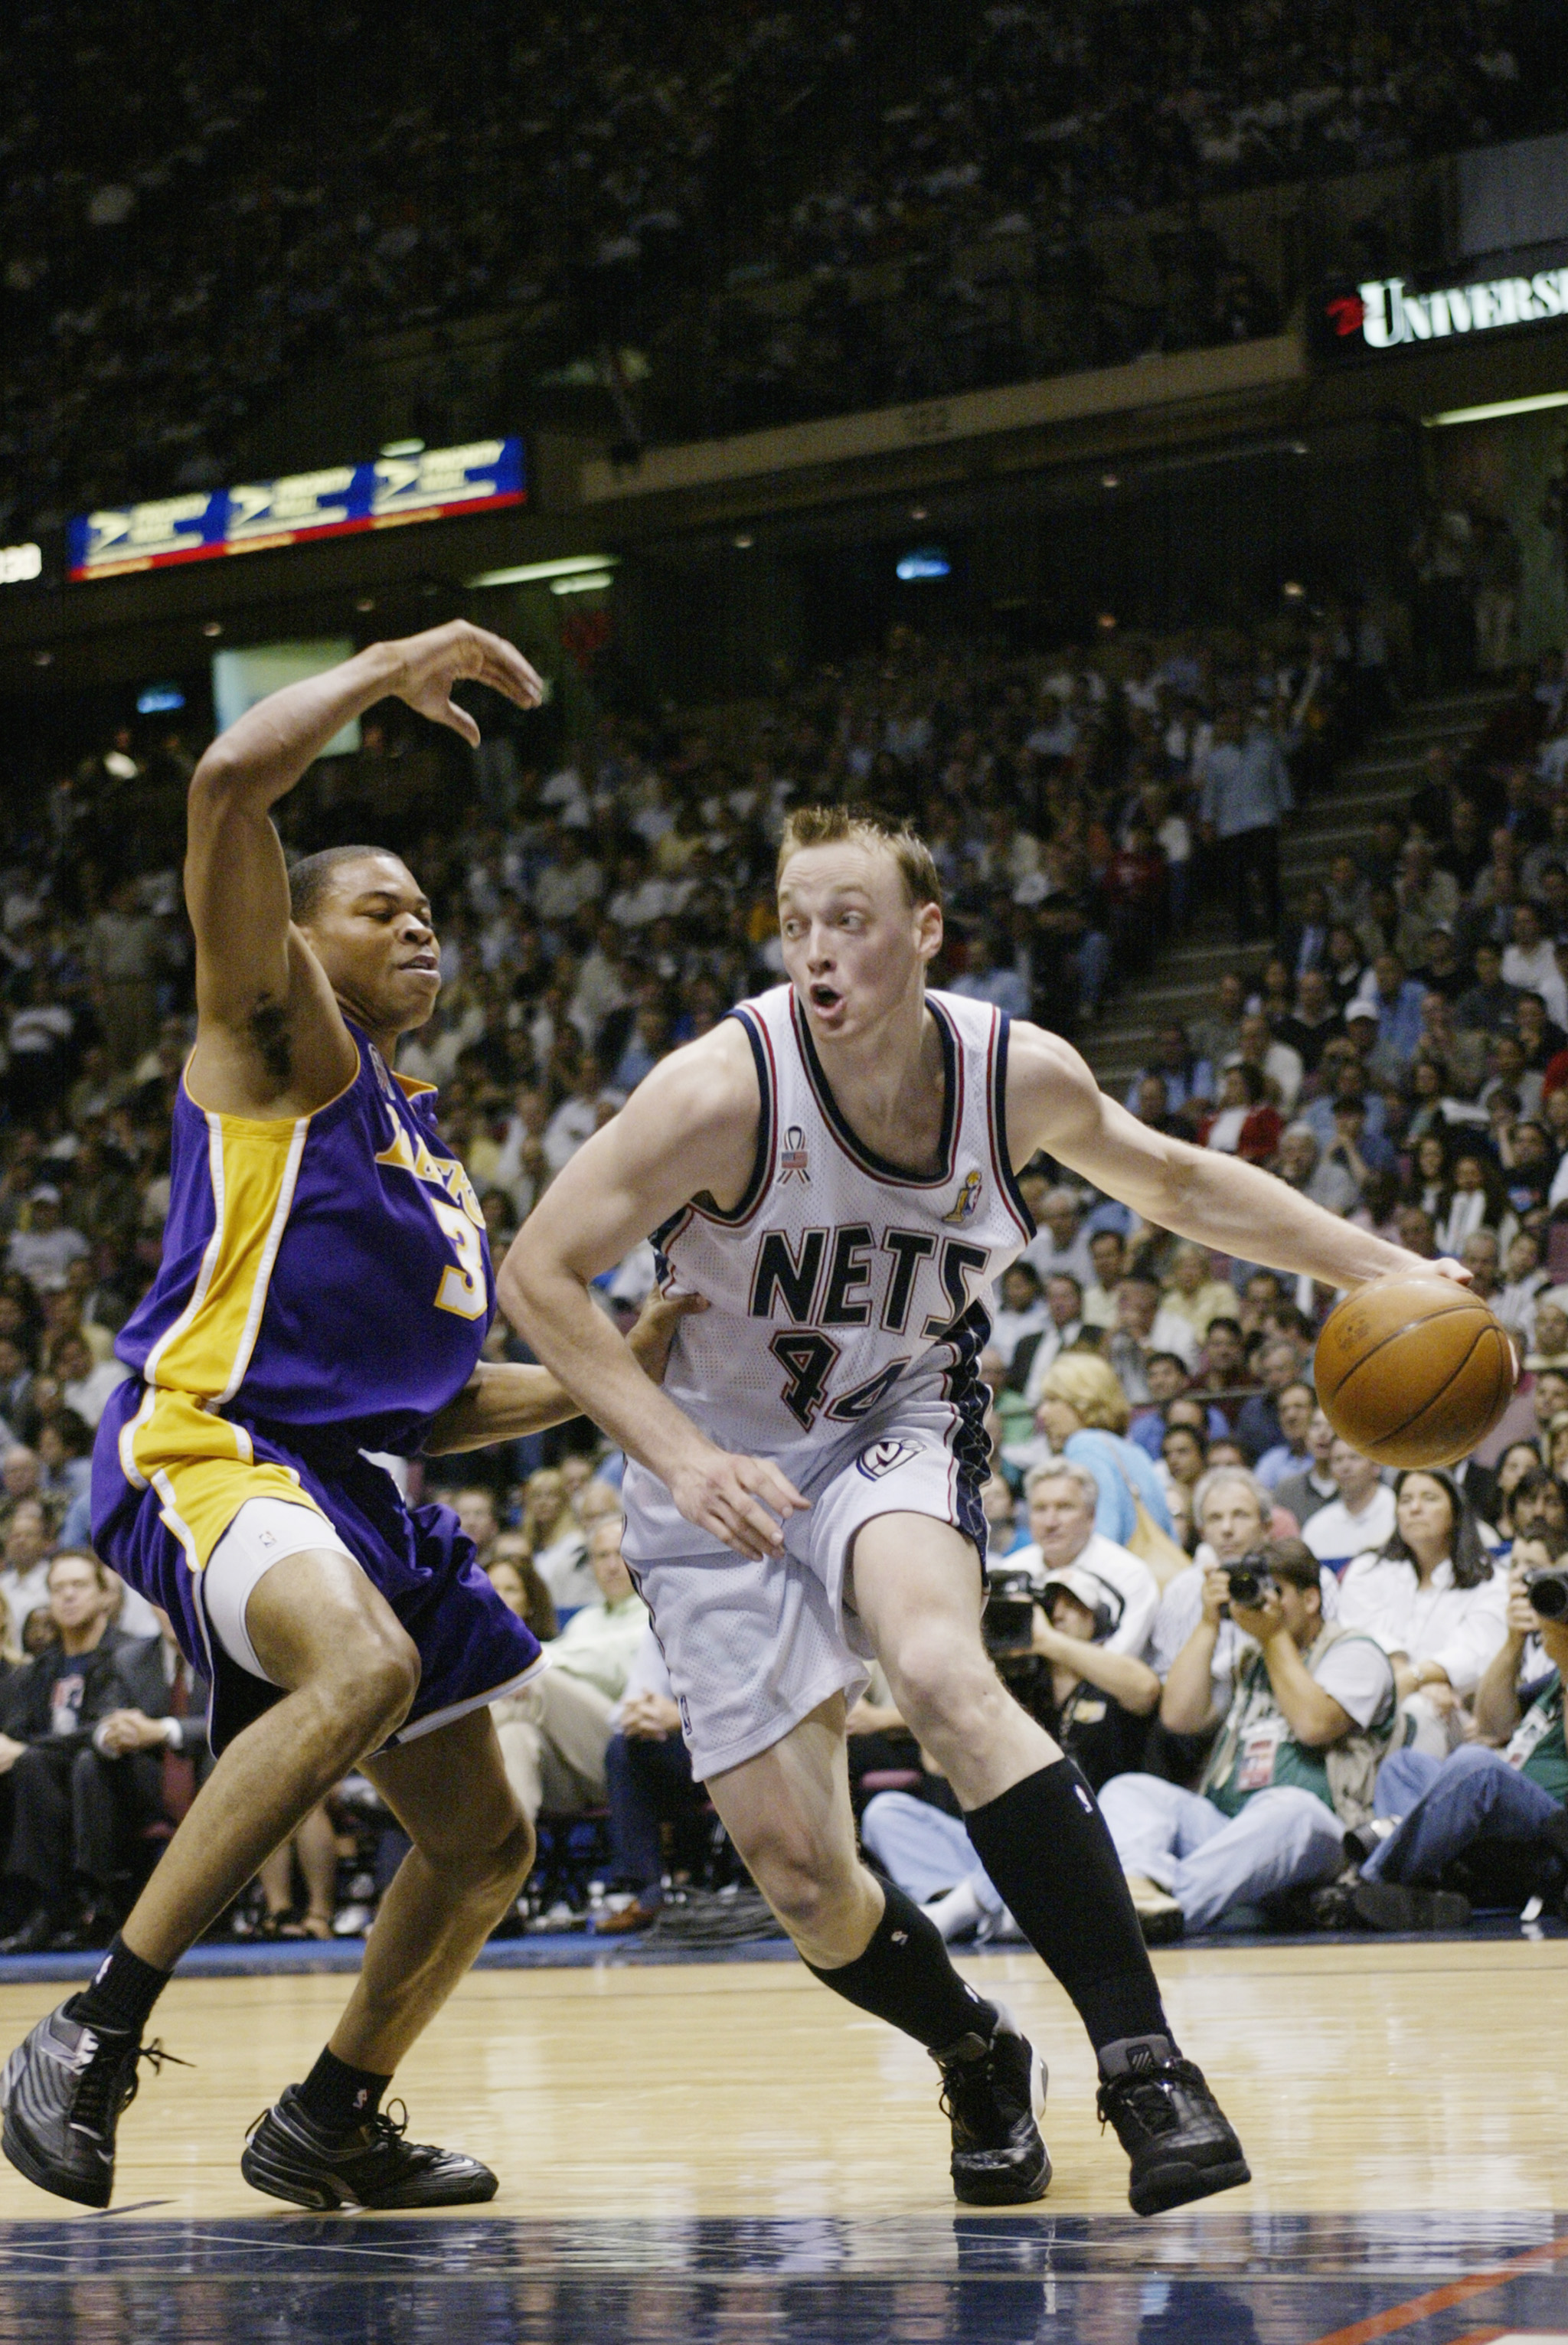 Brooklyn Nets Retire Jersey of Jason Kidd – SportsLogos.Net News